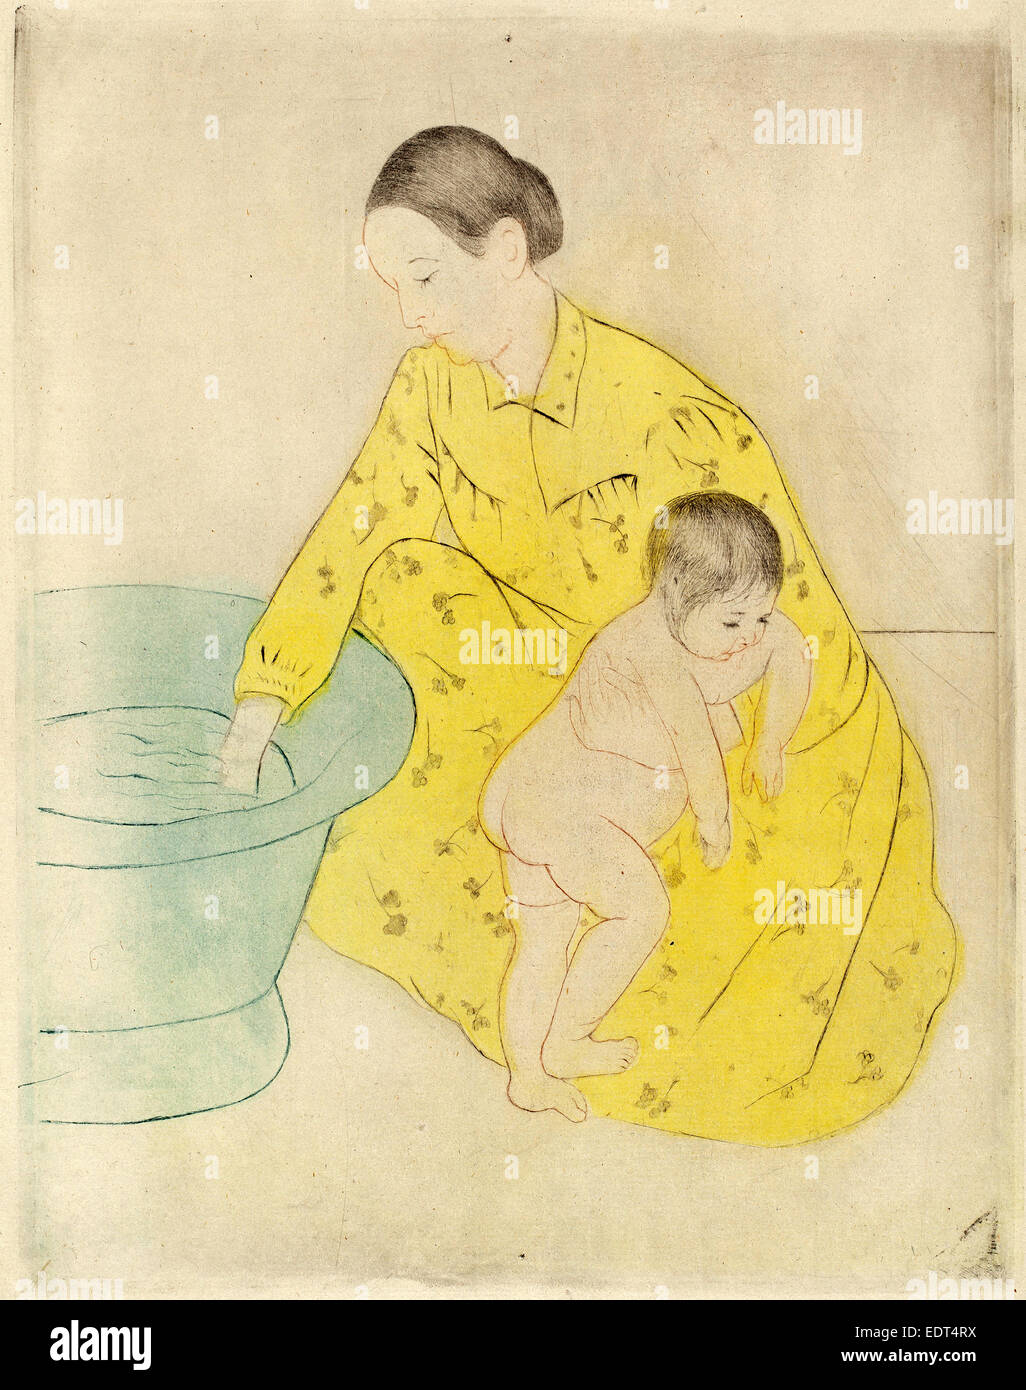 Mary Cassatt, la baignoire, cuisine américaine, 1844 - 1926, ch. 1891, pointe sèche et eau-forte en sol souple, bleu, jaune, noir et sanguine Banque D'Images